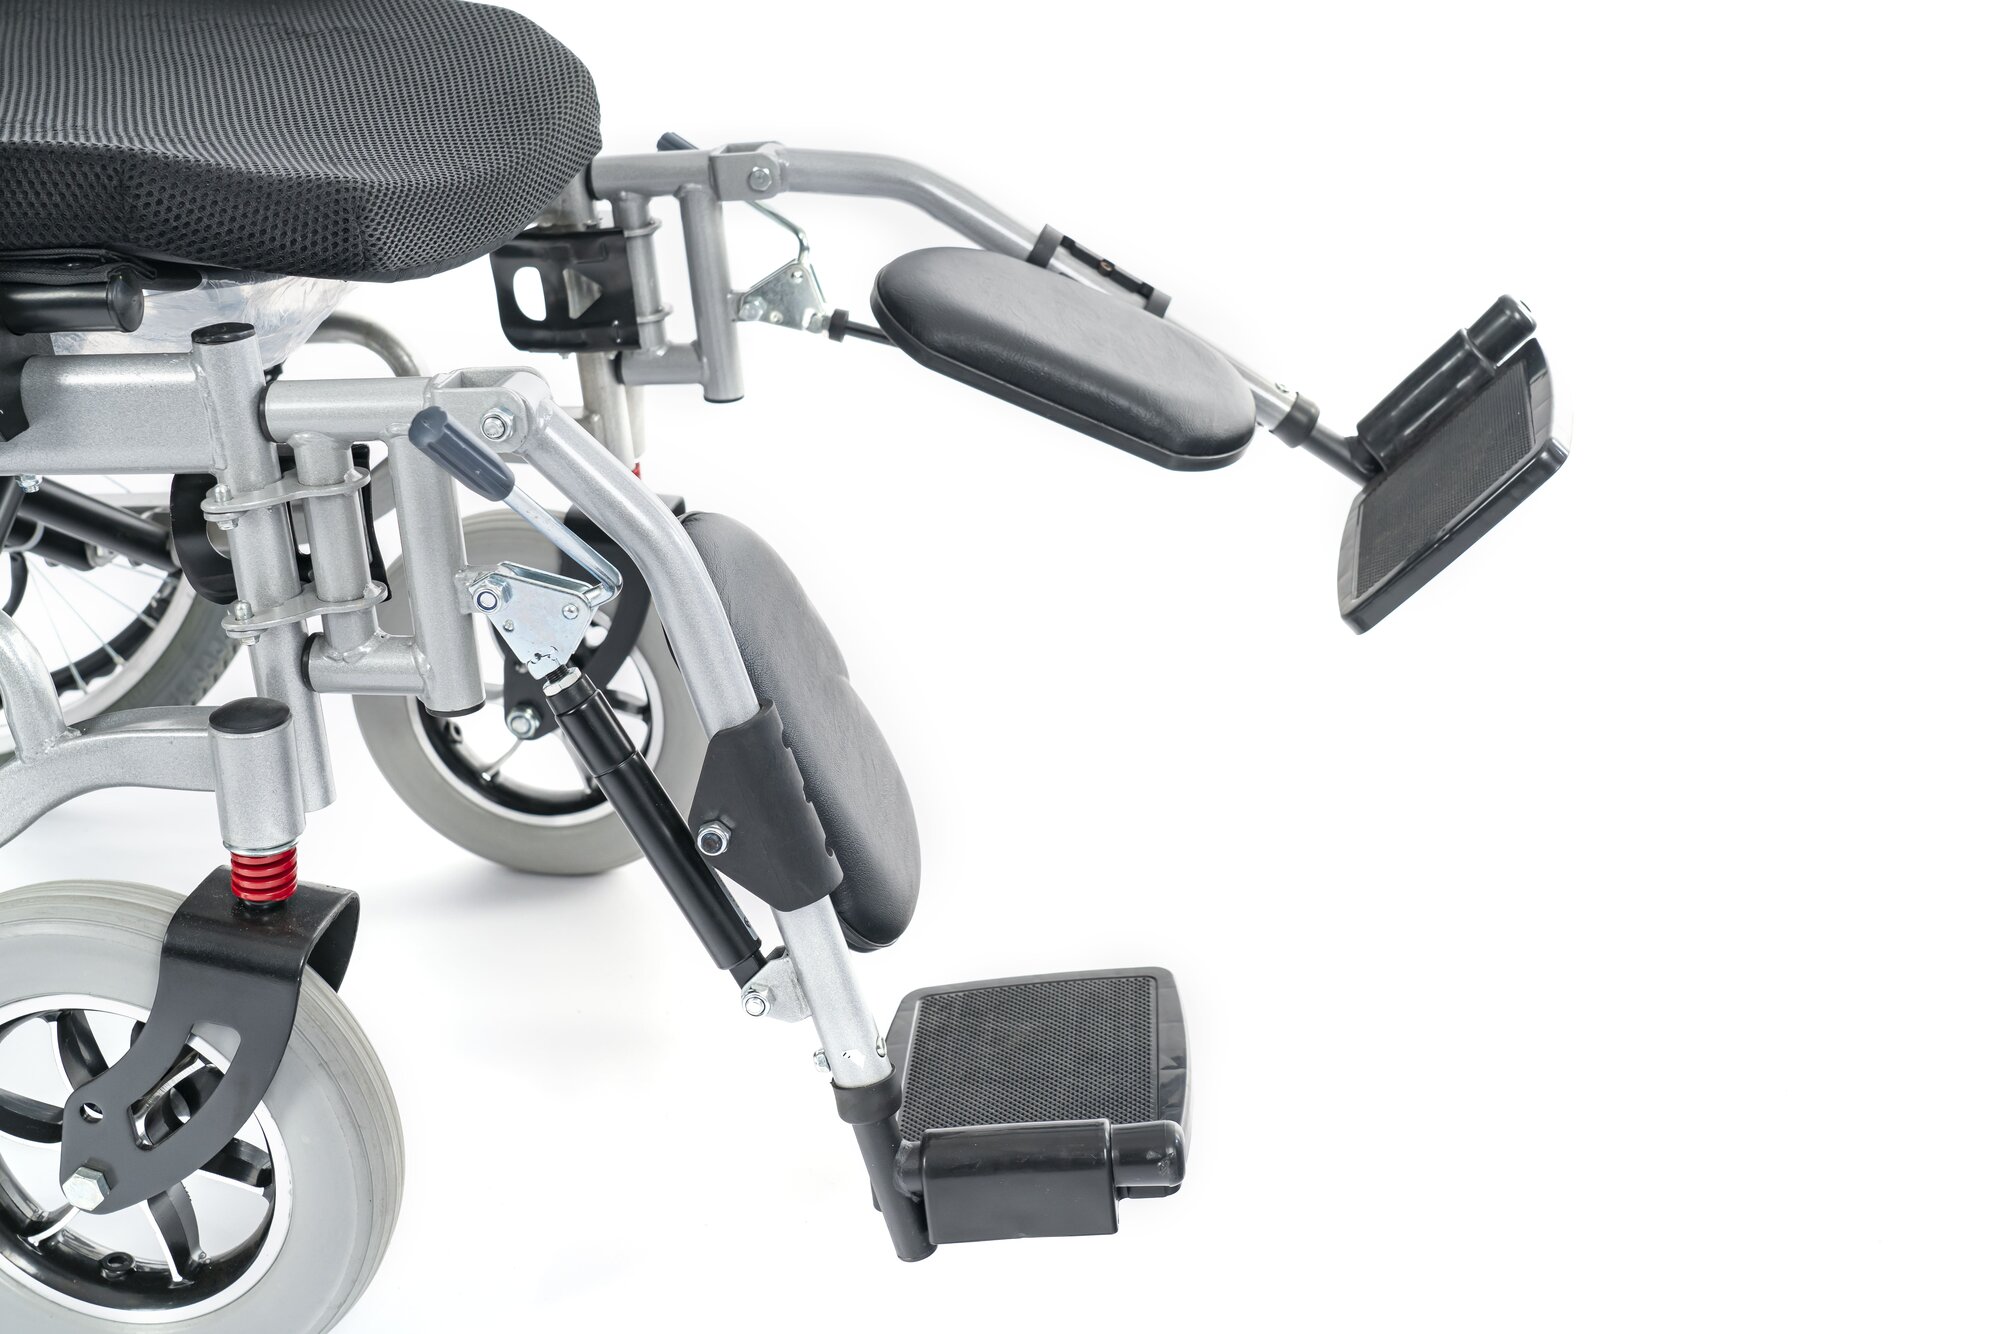 Кресло-коляска с электроприводом MET COMFORT 42 (20504) 40АН Изделие ортопедическое для профилактики и реабилитации кресло-коляска инвалидное в варианте исполнения: МЕТ COMFORT 42